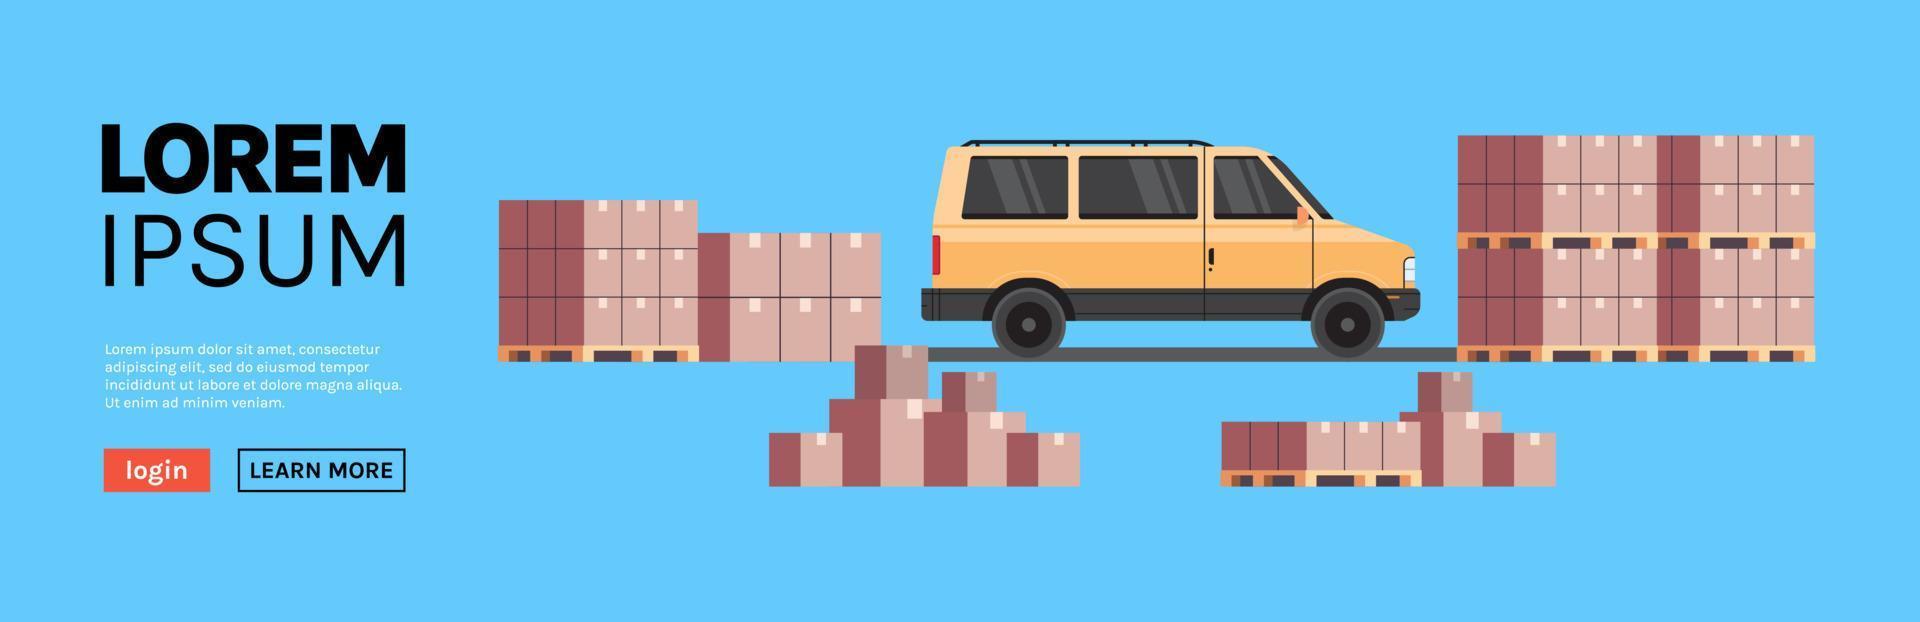 minivan de carga de almacén que carga paquetes de paquetes y concepto industrial de entrega internacional ilustración vectorial plana. vector